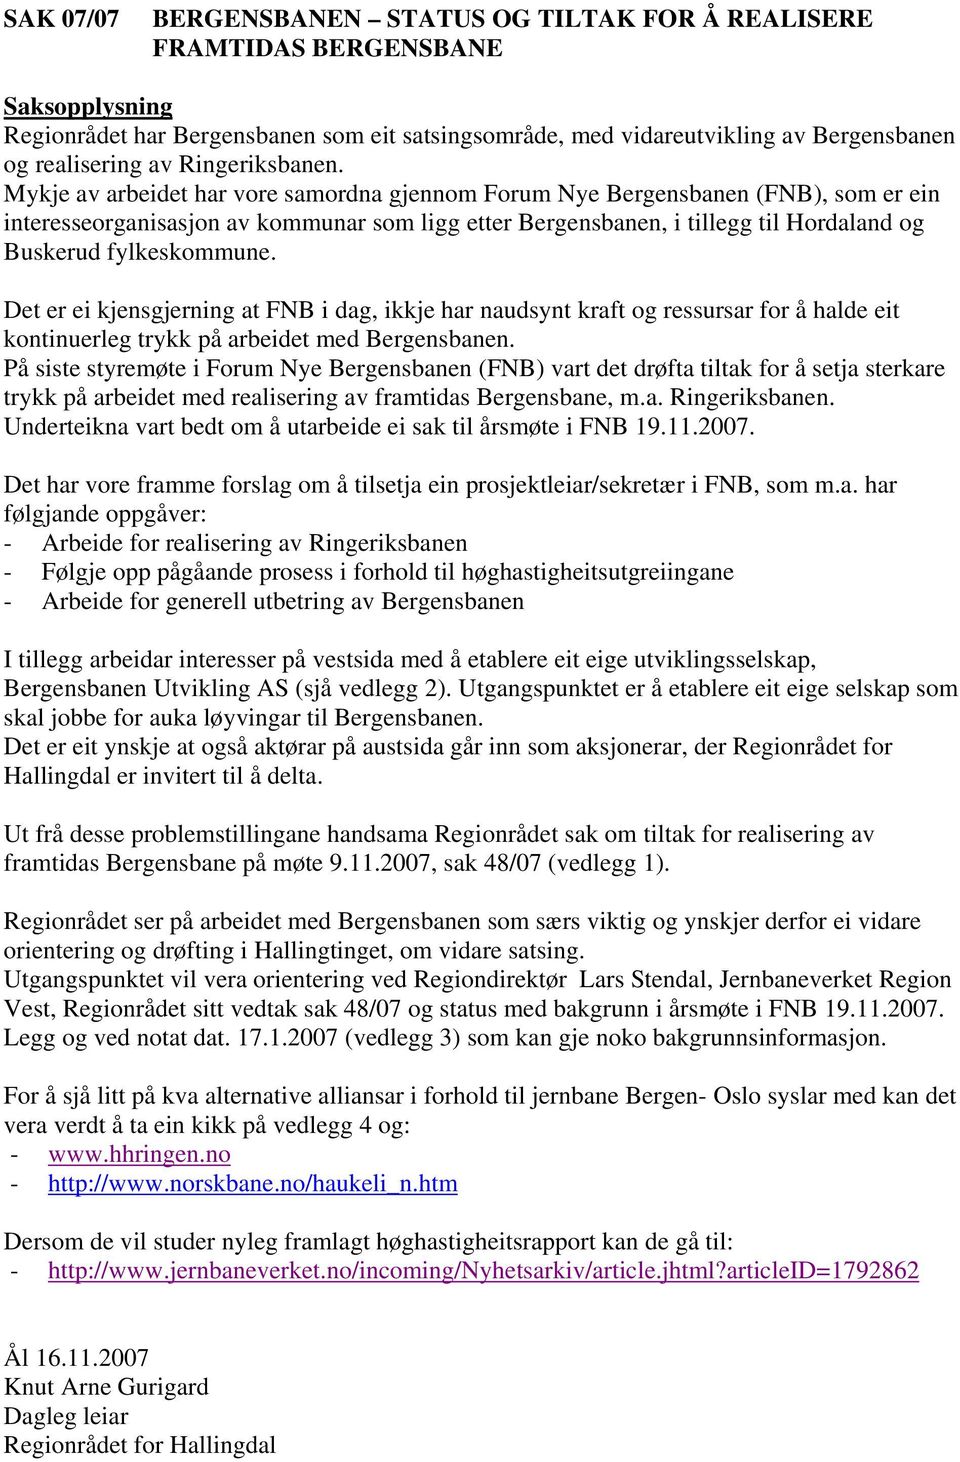 Mykje av arbeidet har vore samordna gjennom Forum Nye Bergensbanen (FNB), som er ein interesseorganisasjon av kommunar som ligg etter Bergensbanen, i tillegg til Hordaland og Buskerud fylkeskommune.